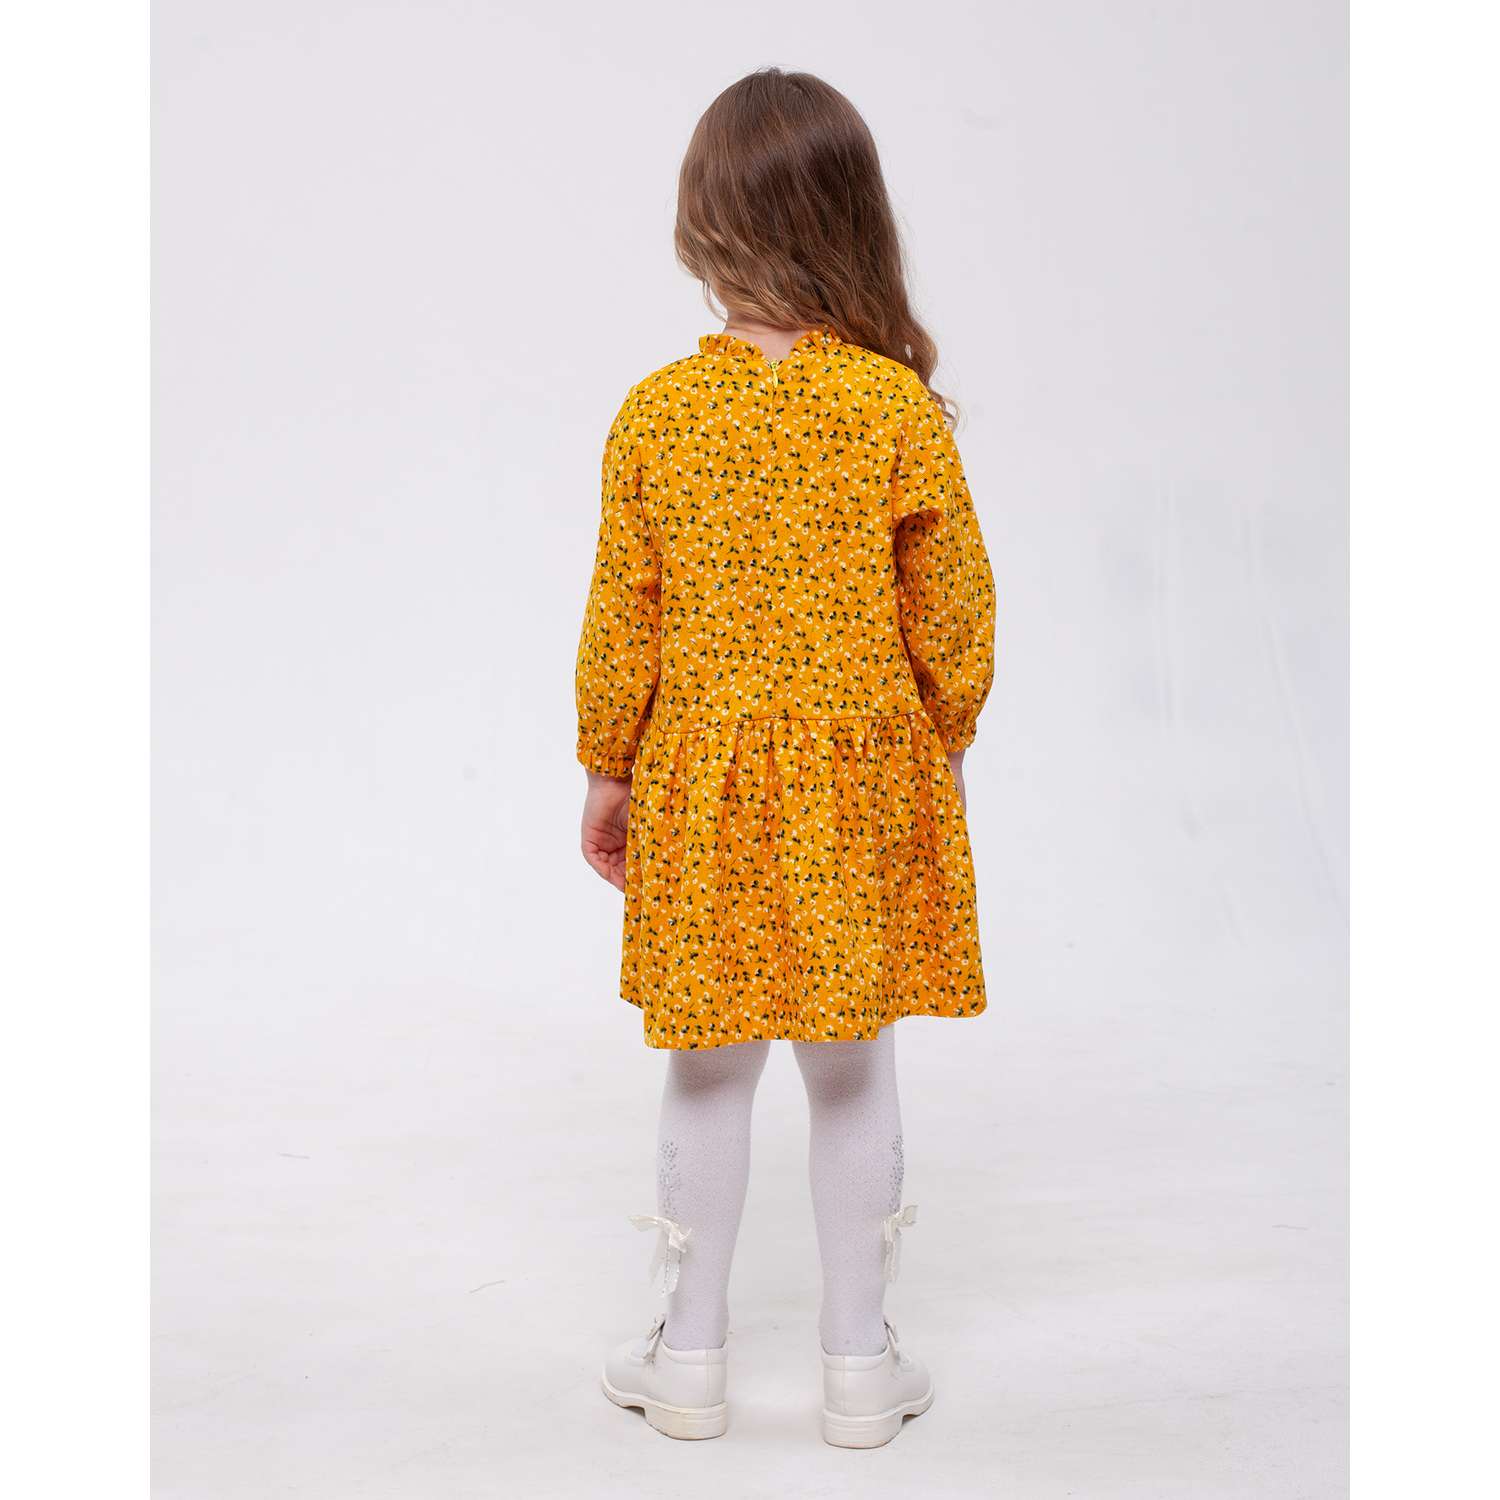 Платье CHILDREAM платье желтое - фото 5